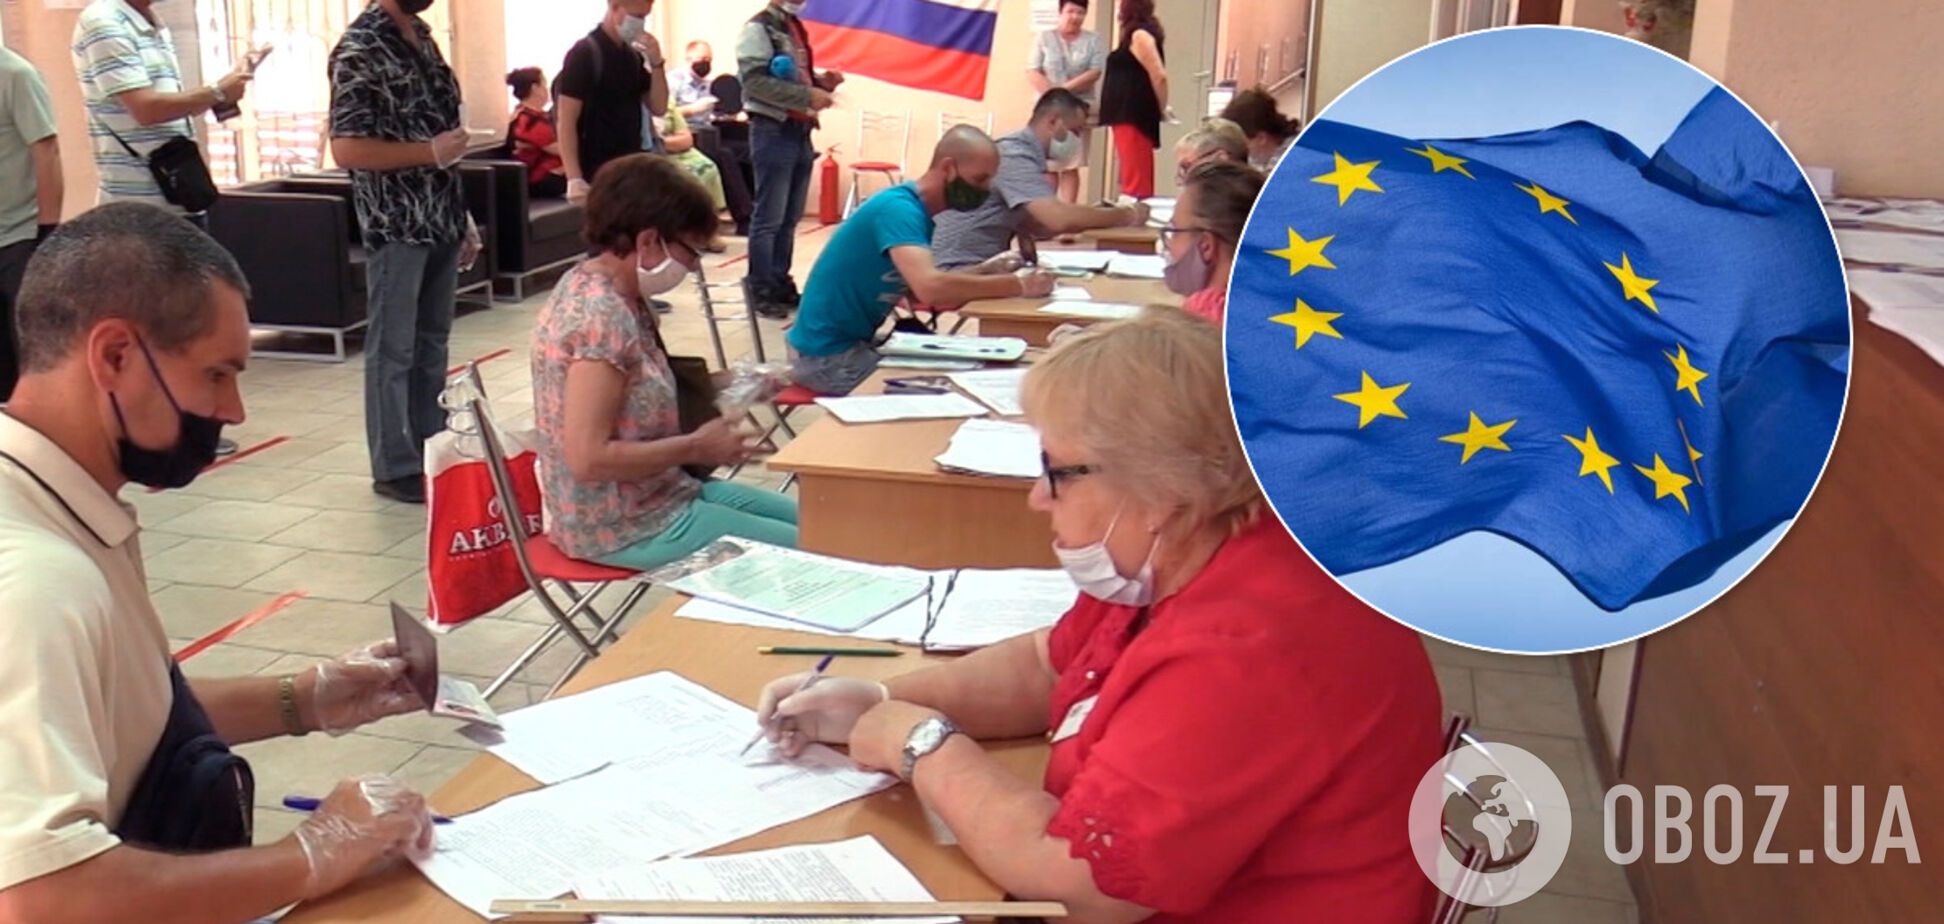 ЕС не признает 'голосование' за изменения в Конституцию РФ в Крыму